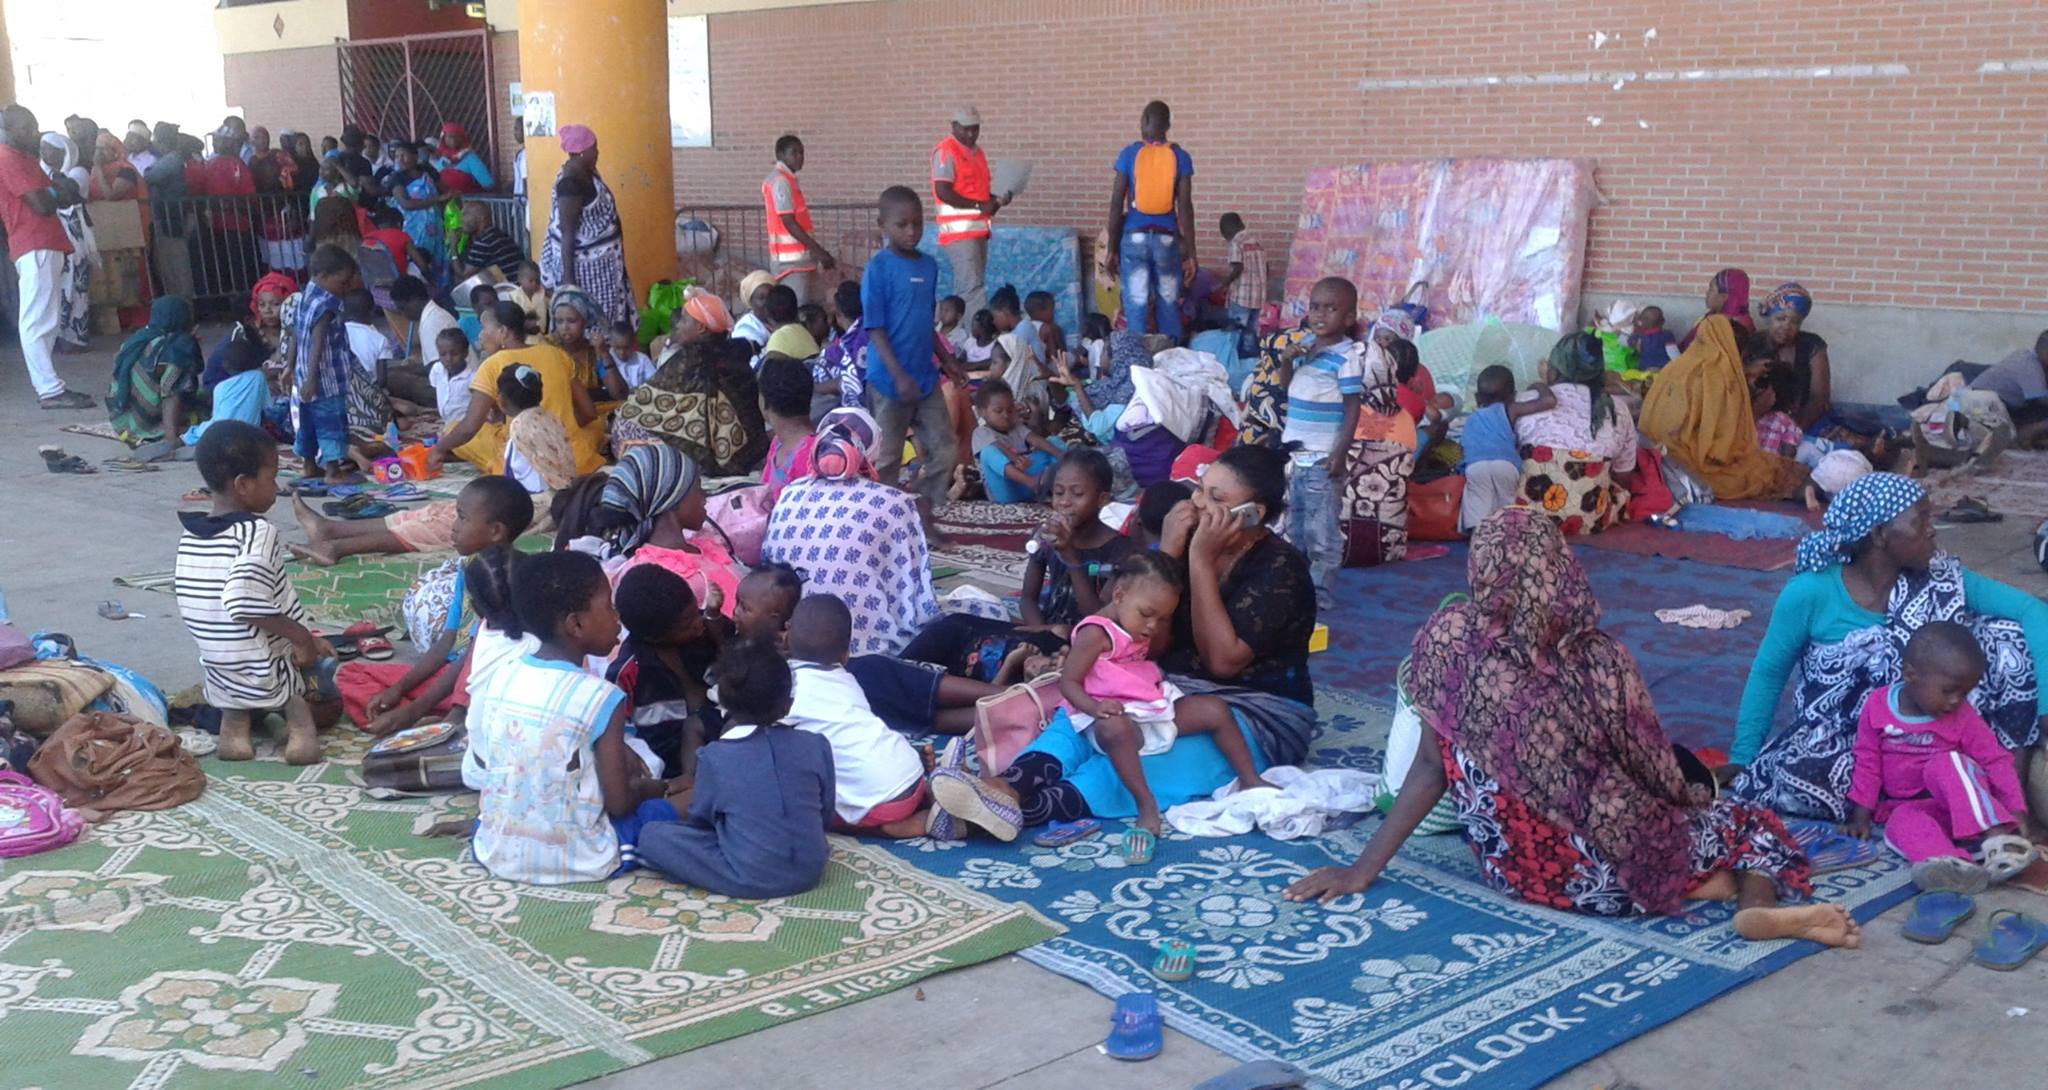 Mayotte: 130 migrants &laquo;&nbsp;décasés&nbsp;&raquo; toujours en hébergement d&rsquo;urgence